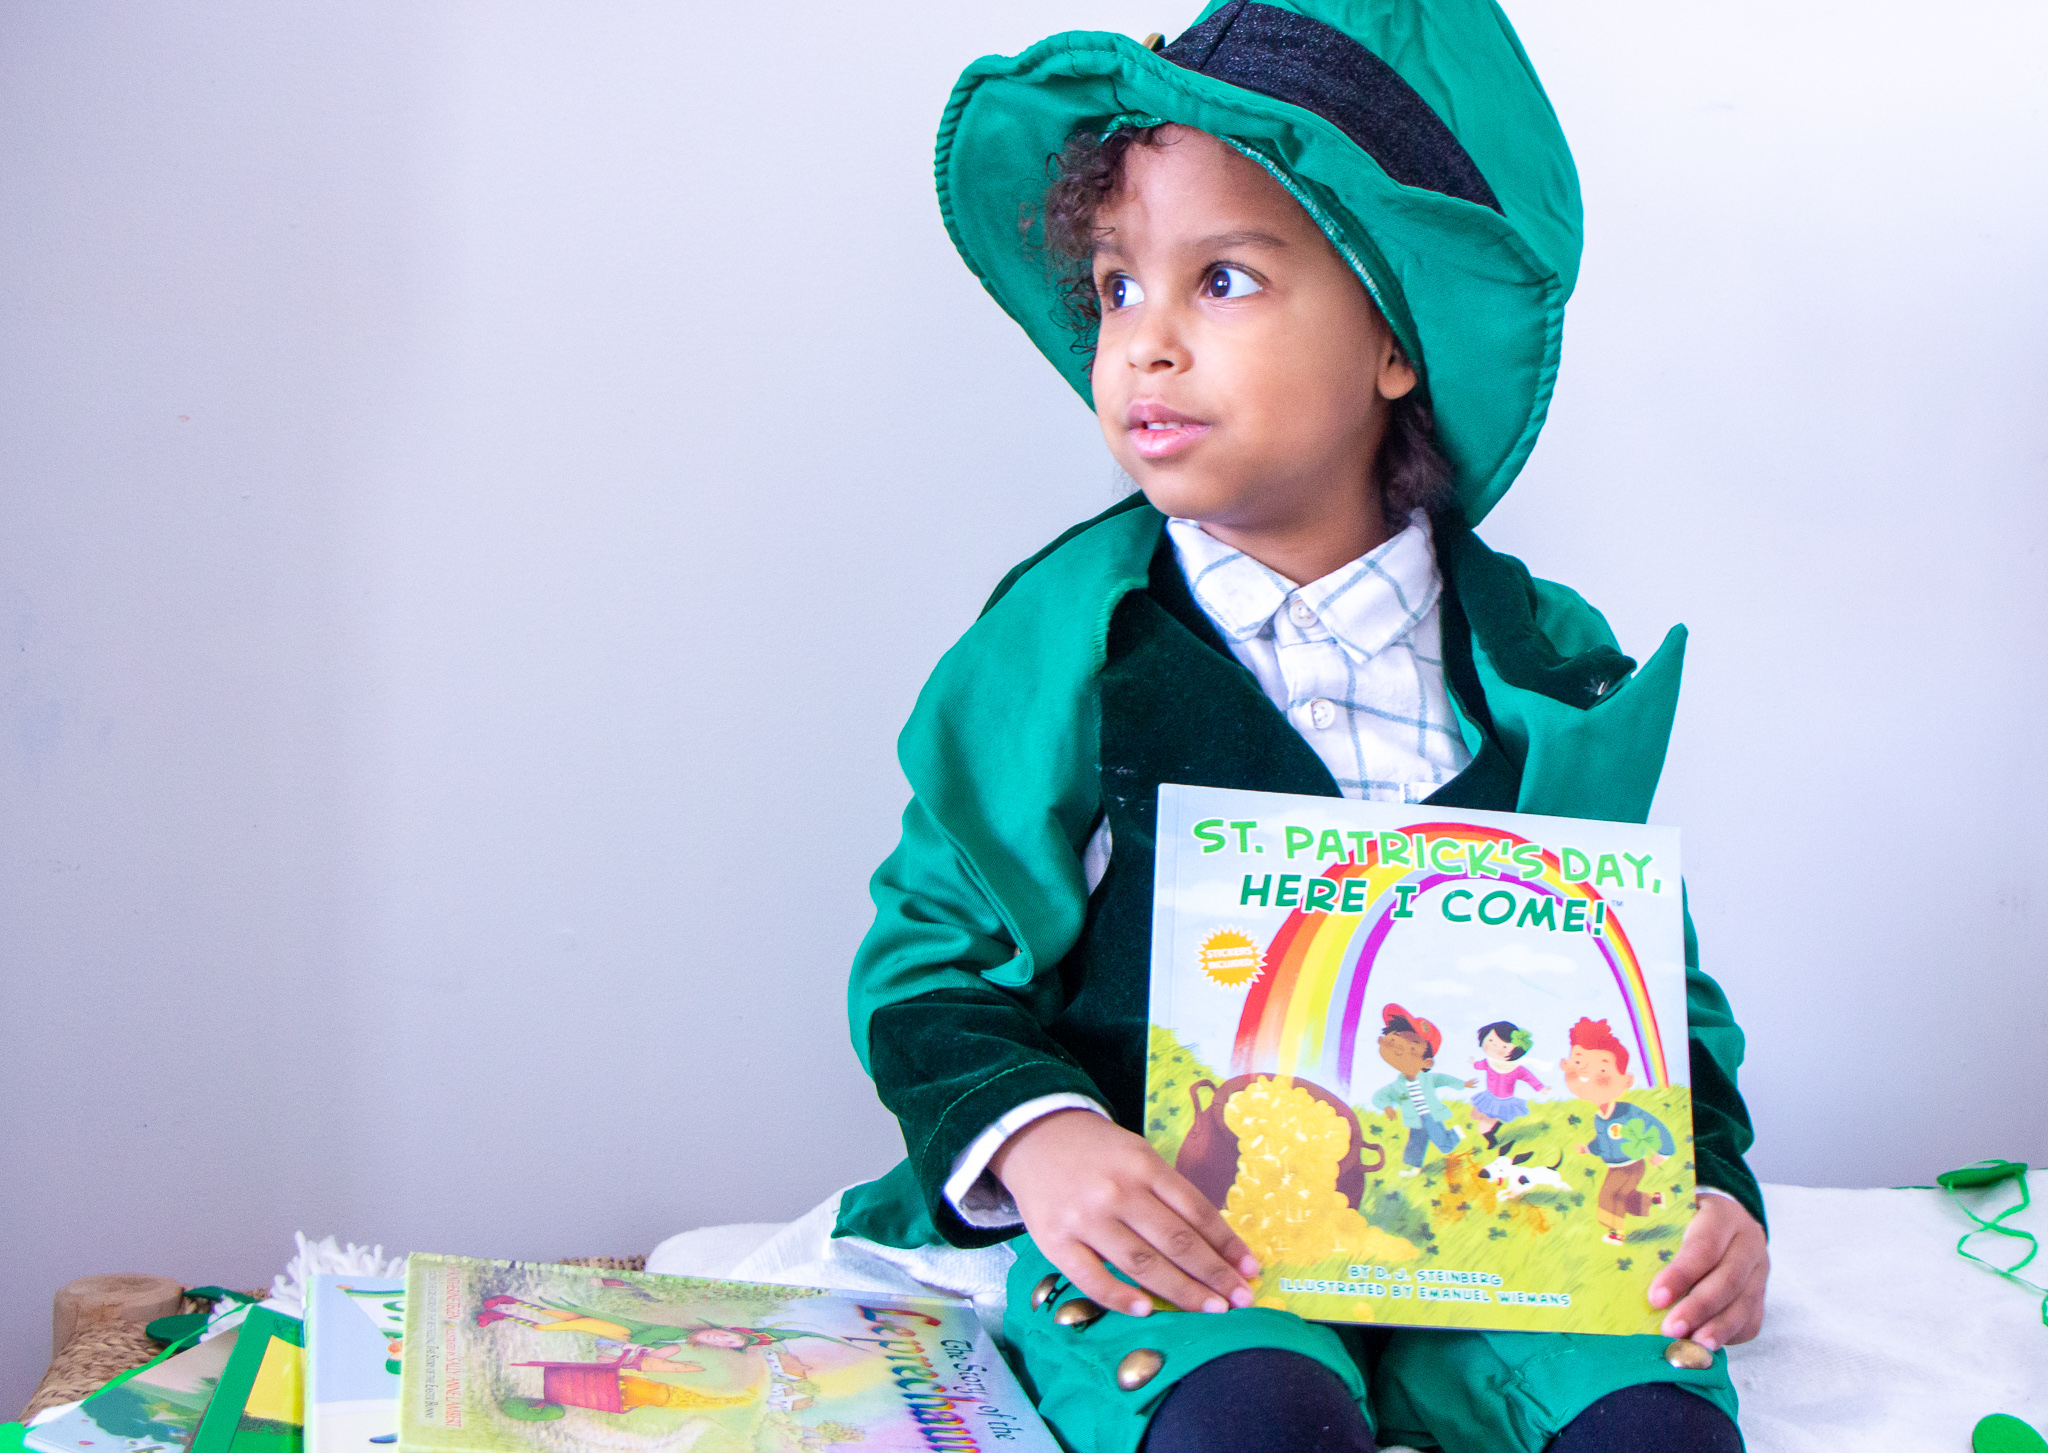 Shamrock Stories: Charming Children's Books for St. Patrick's Day